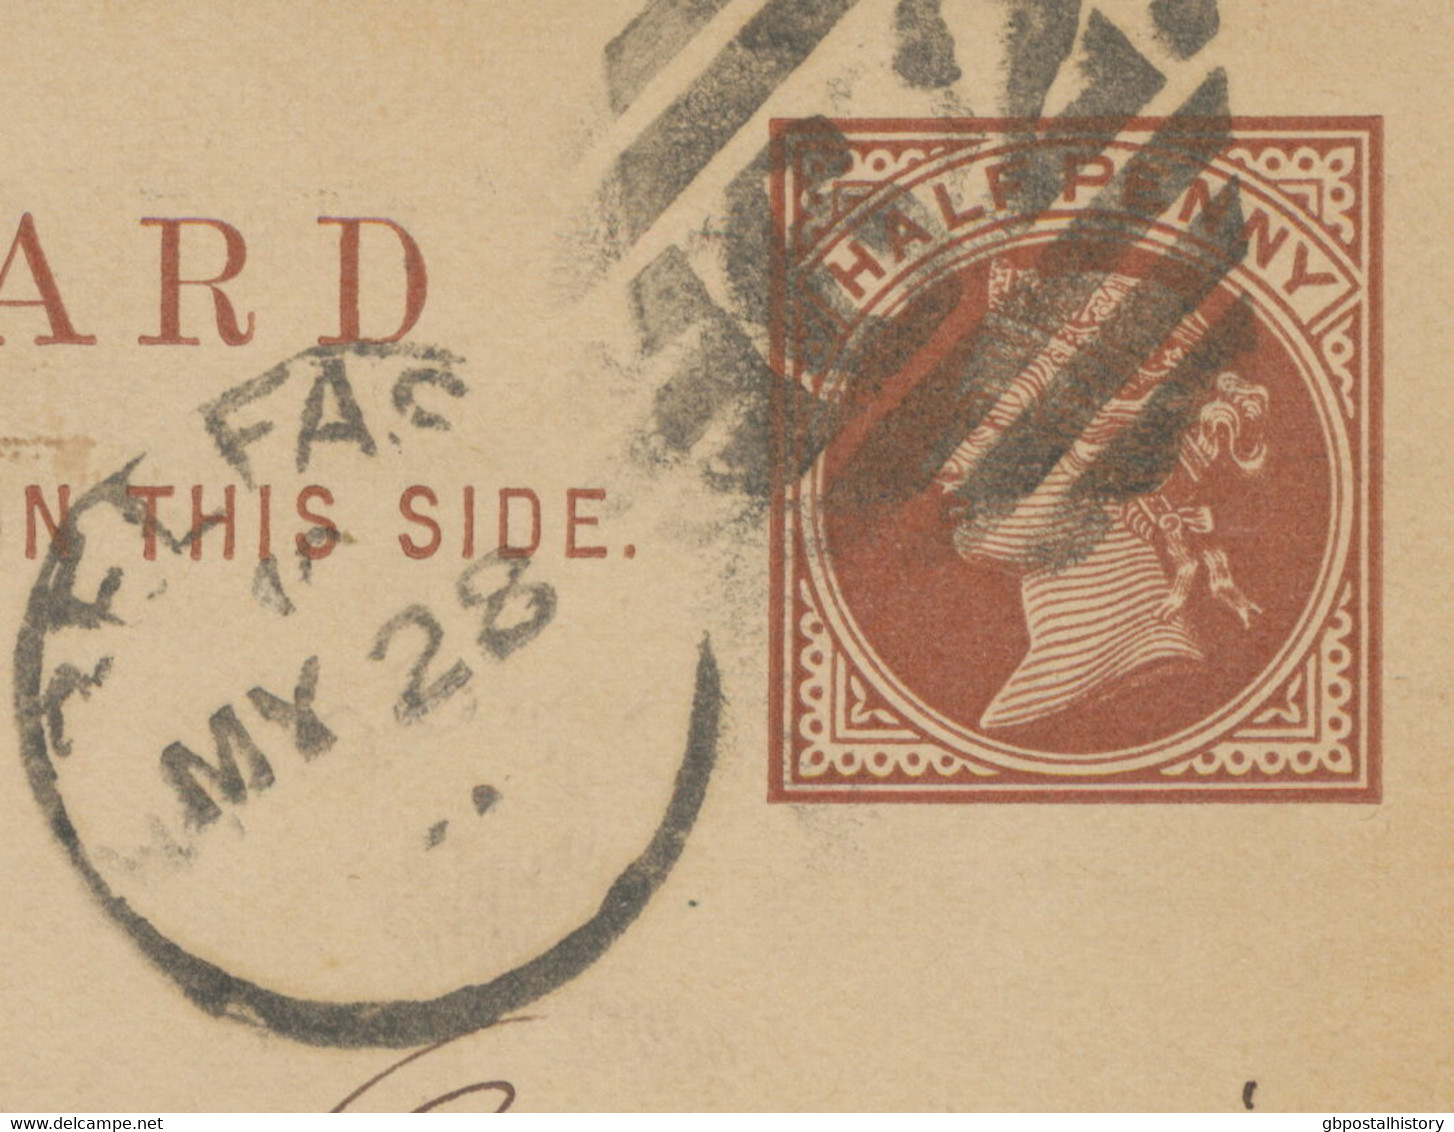 GB „62 / BELFAST“ IRISH Duplex Postcard Uprated With ½ D Jubilee To BERN 1891 - Northern Ireland